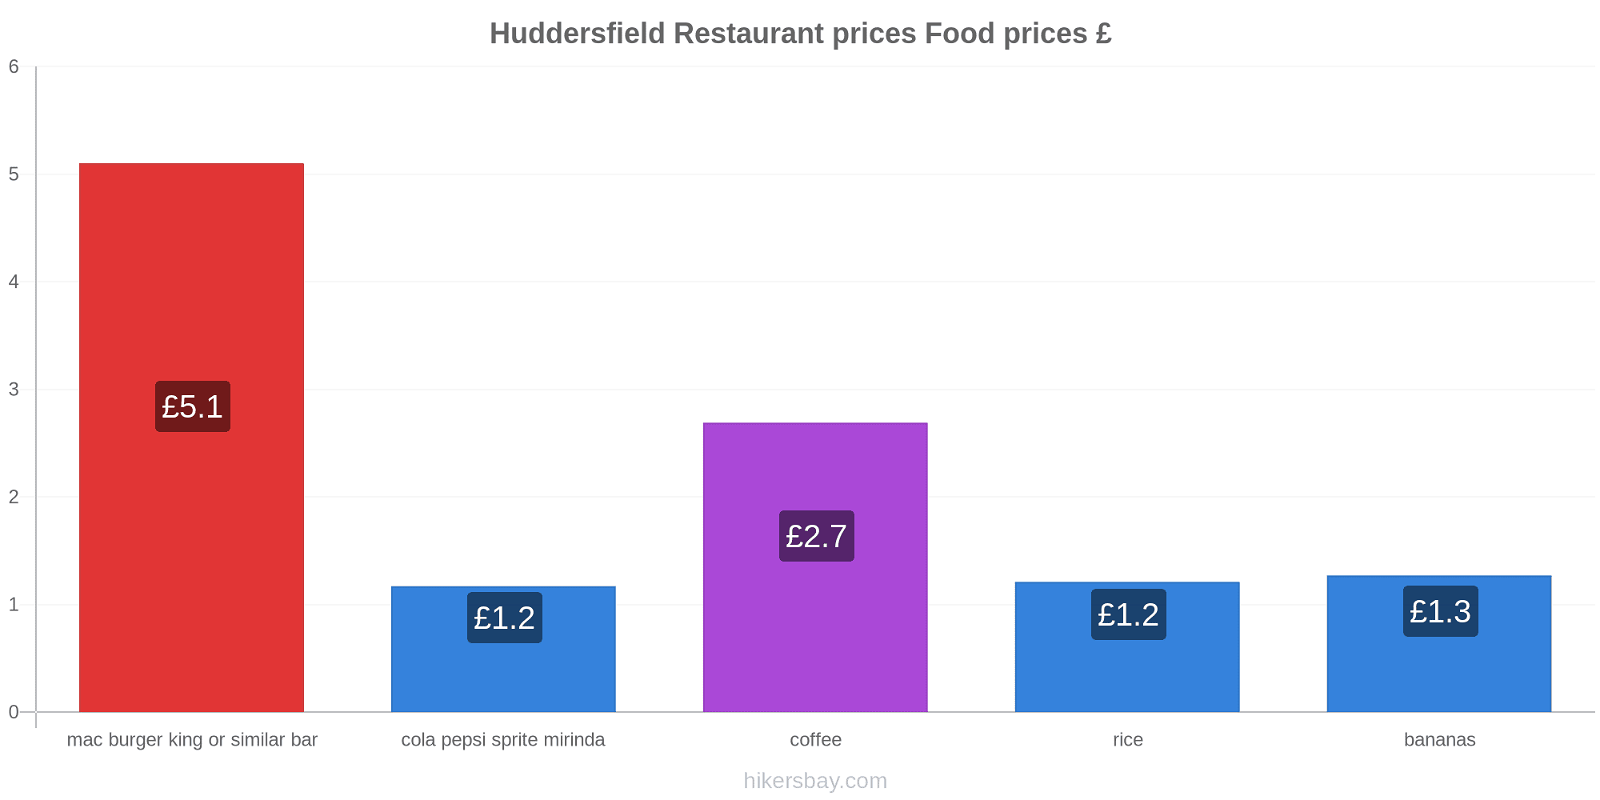 Huddersfield price changes hikersbay.com